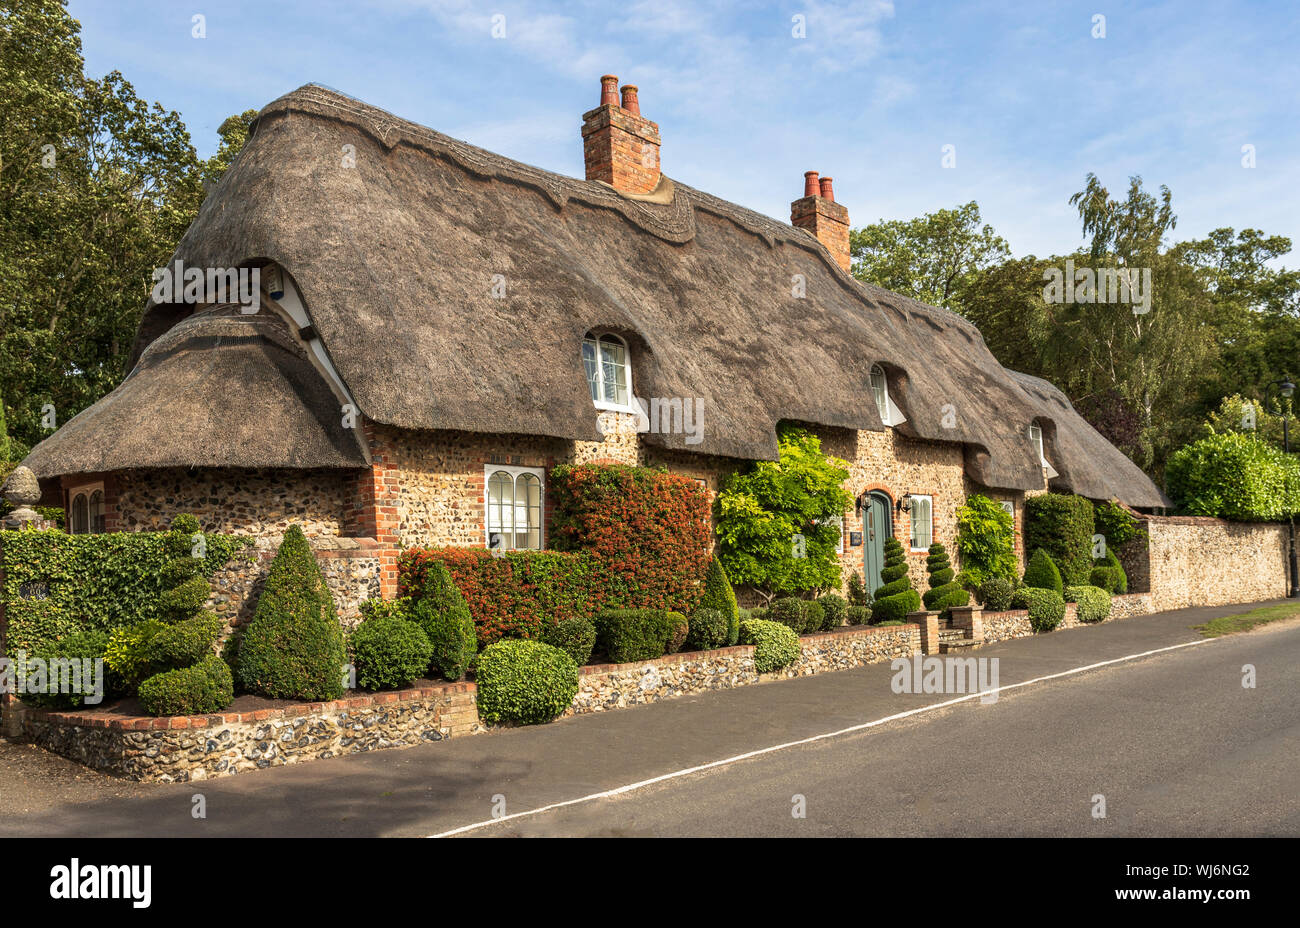 Romantisches Reetdachhaus in Cambridgeshire, England, Großbritannien, Großbritannien, Europa Stockfoto